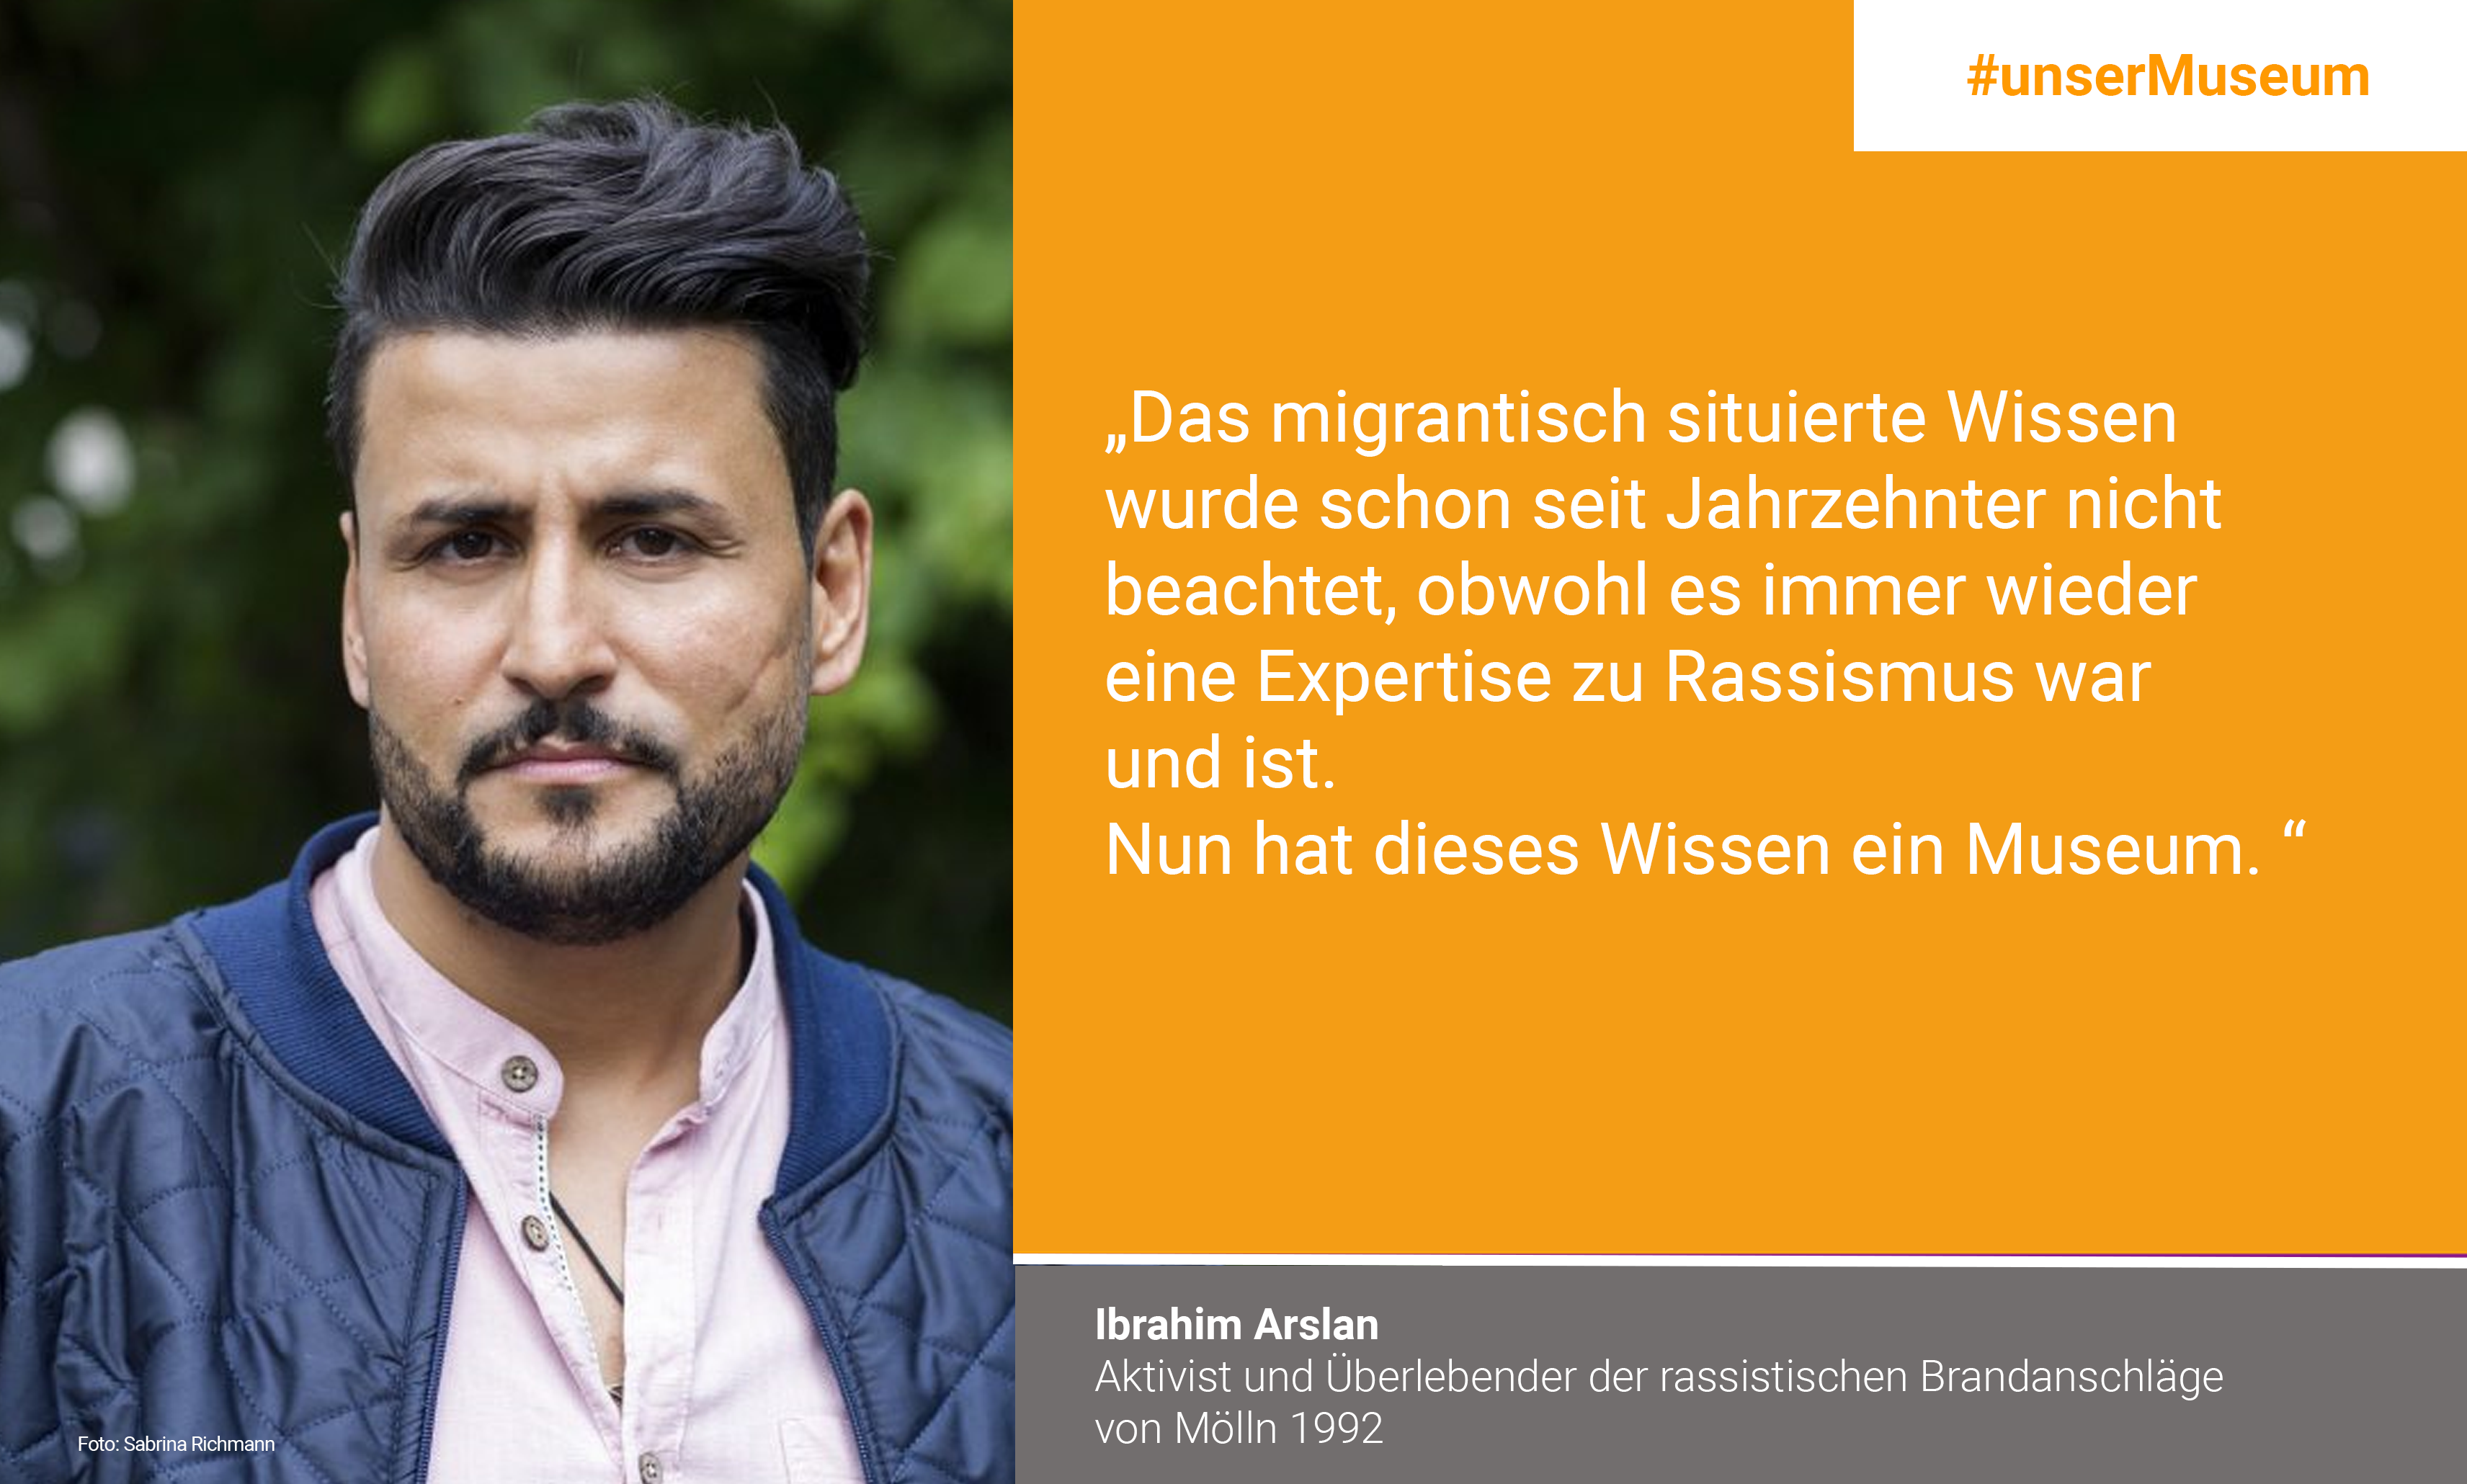 İbrahim Arslan, Aktivist und Überlebender der rassistischen Brandanschläge in Mölln 1992: "Das migrantisch situierte Wissen, wurde schon seit Jahrzehnten nicht beachtet, obwohl es immer wieder eine Expertise zu Rassismus war und ist. Nun hat dieses Wissen ein Museum."